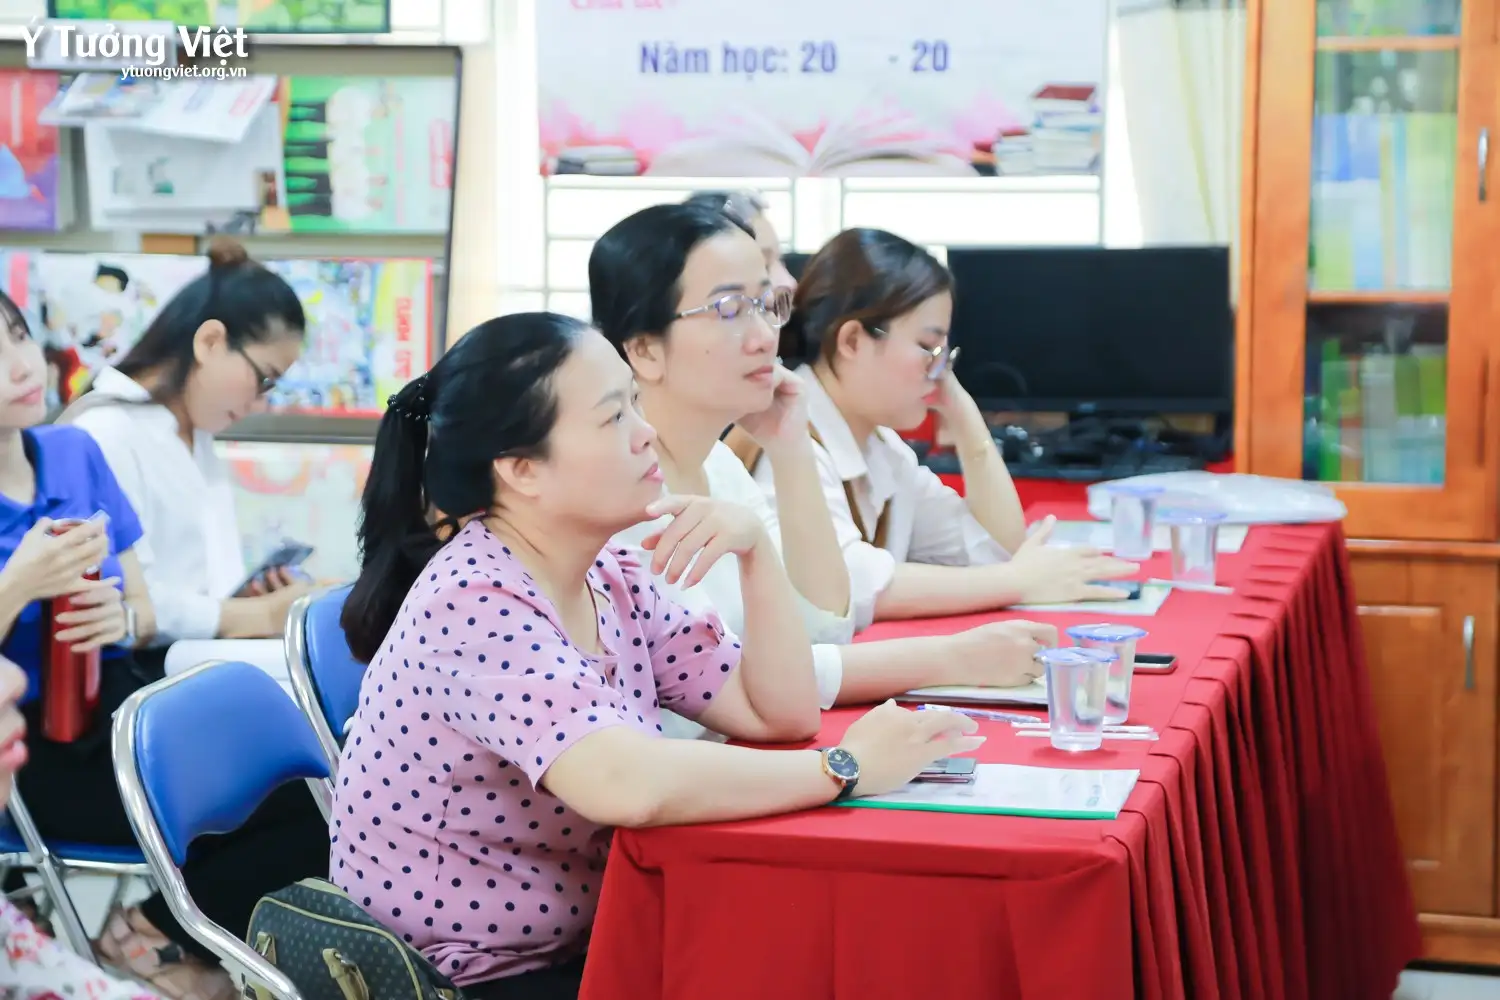 Toạ đàm “Nâng cao năng lực chăm sóc sức khoẻ tinh thần học sinh quận Tân Phú” – Cột móc mới trên chặng đường xây dựng môi trường học đường hạnh phúc